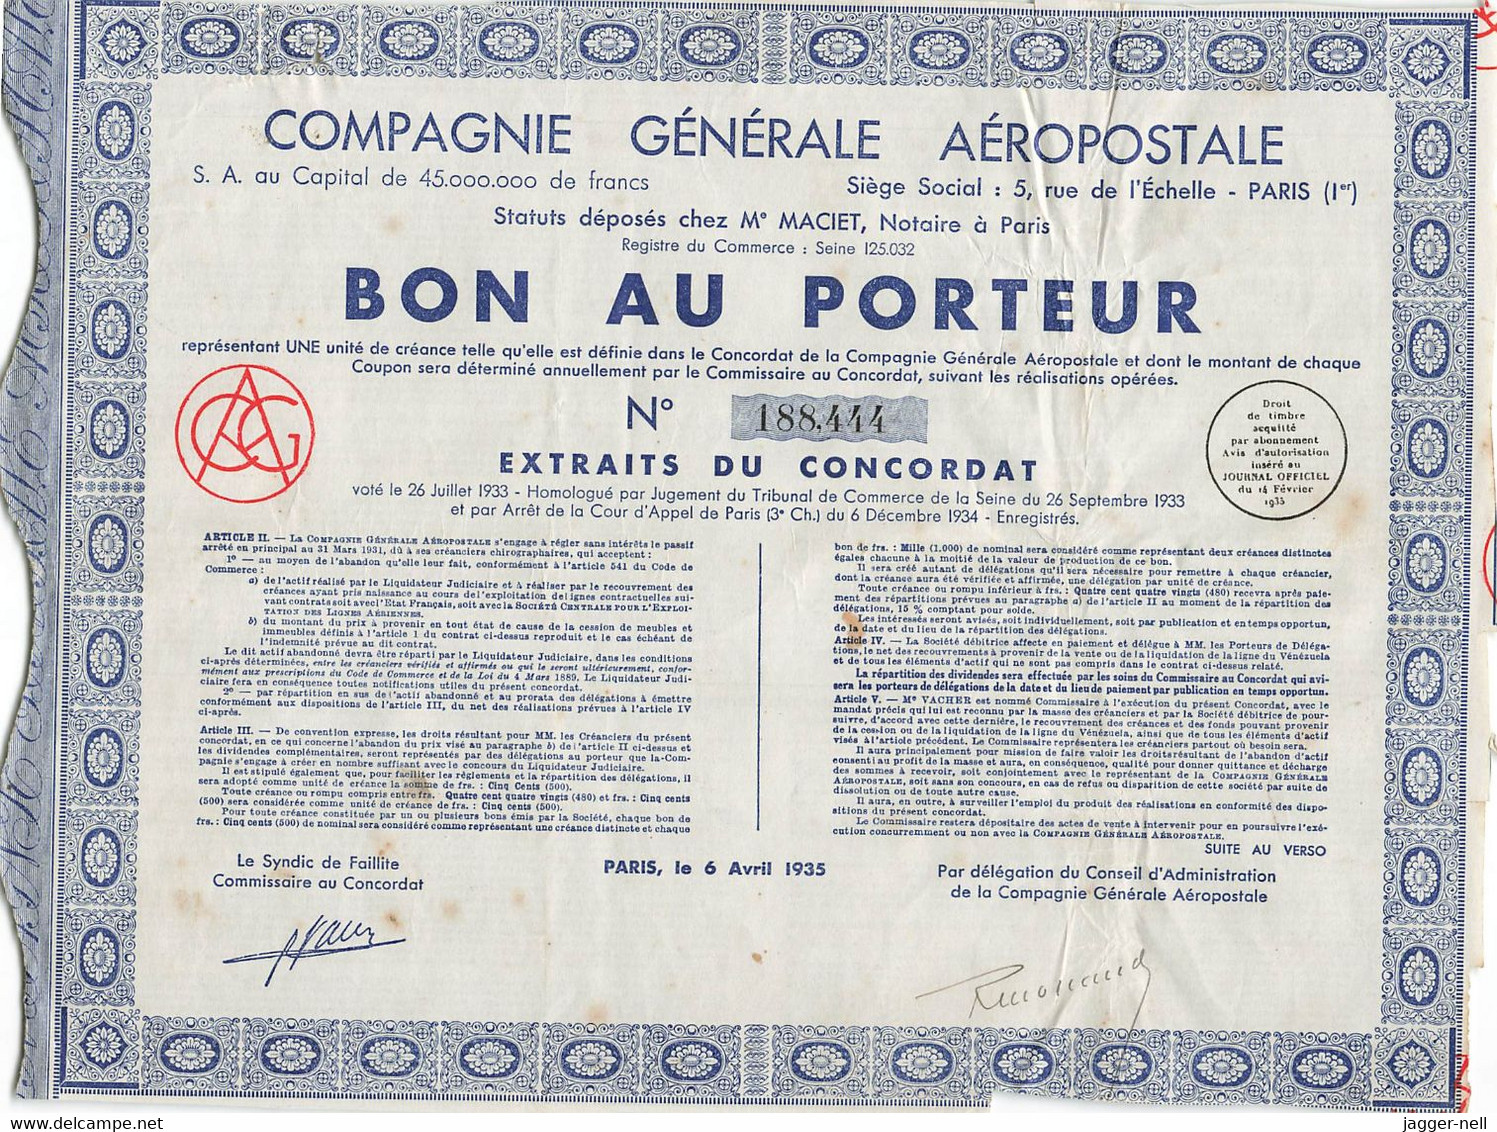 Superbe Lot de 40 "Bon au Porteur" Compagnie Générale Aéropostale - Aviation - 6 Avril 1935 - N°188 410 à 188 530 -